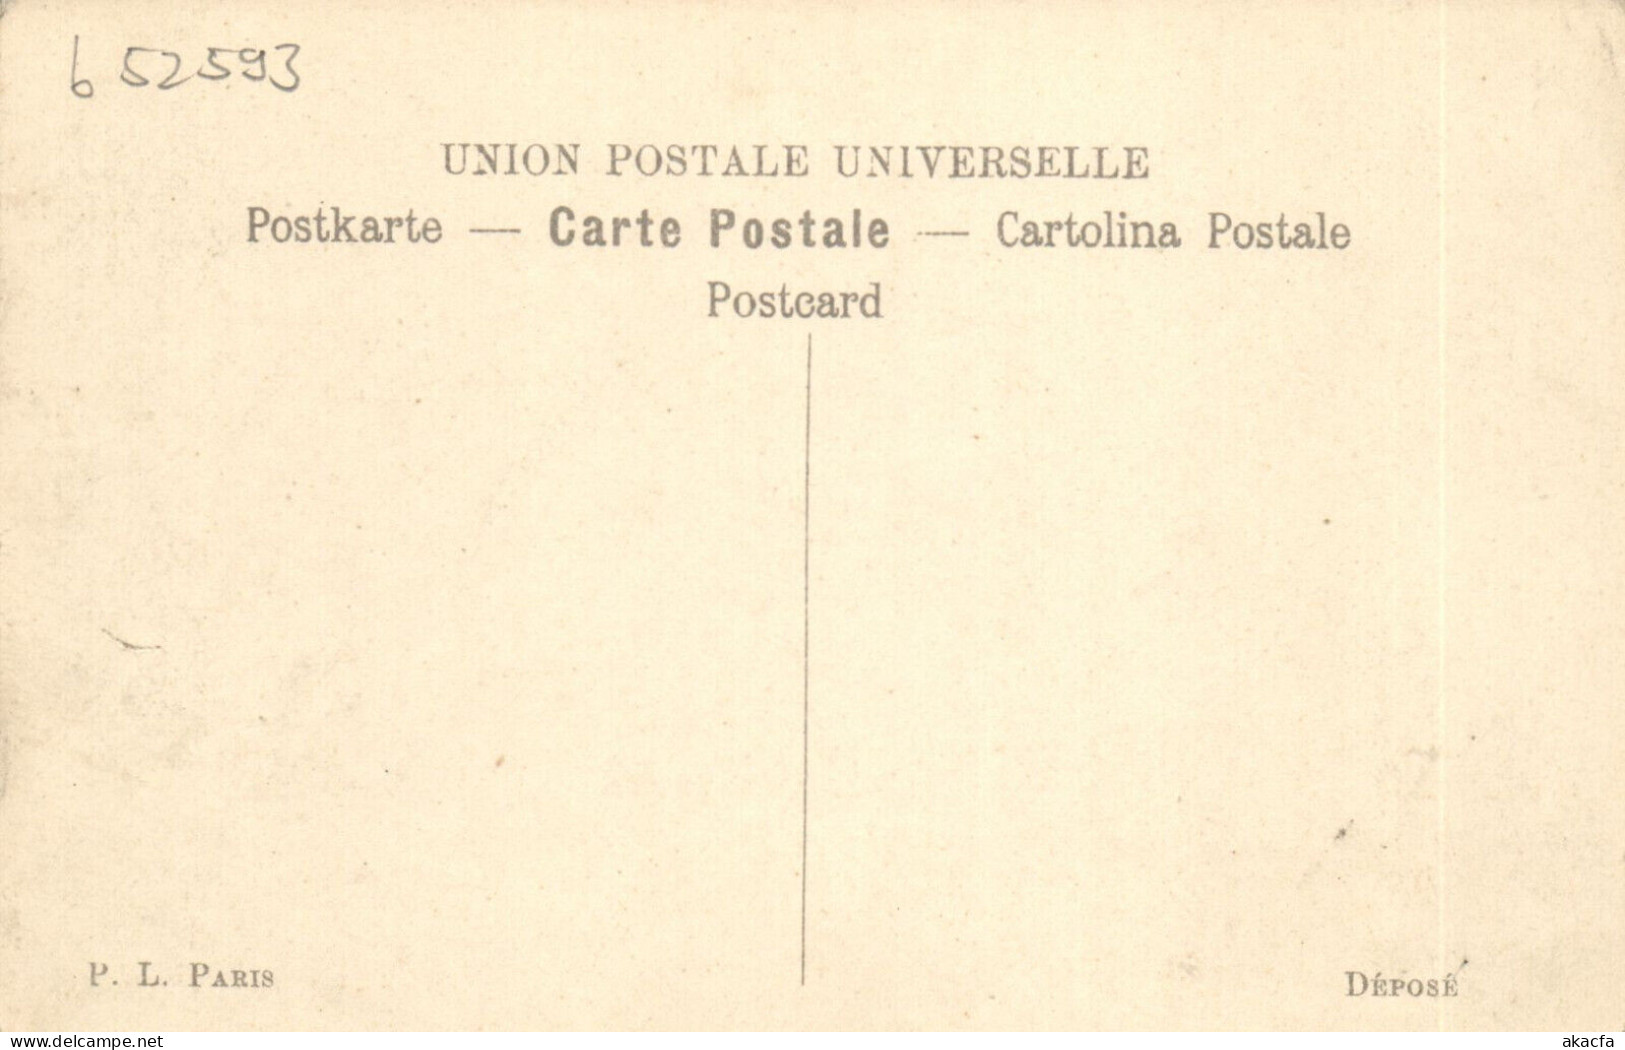 PC ARTIST SIGNED, LION, CHAMBRE DES DÉPUTÉS, Vintage Postcard (b52593) - Lion